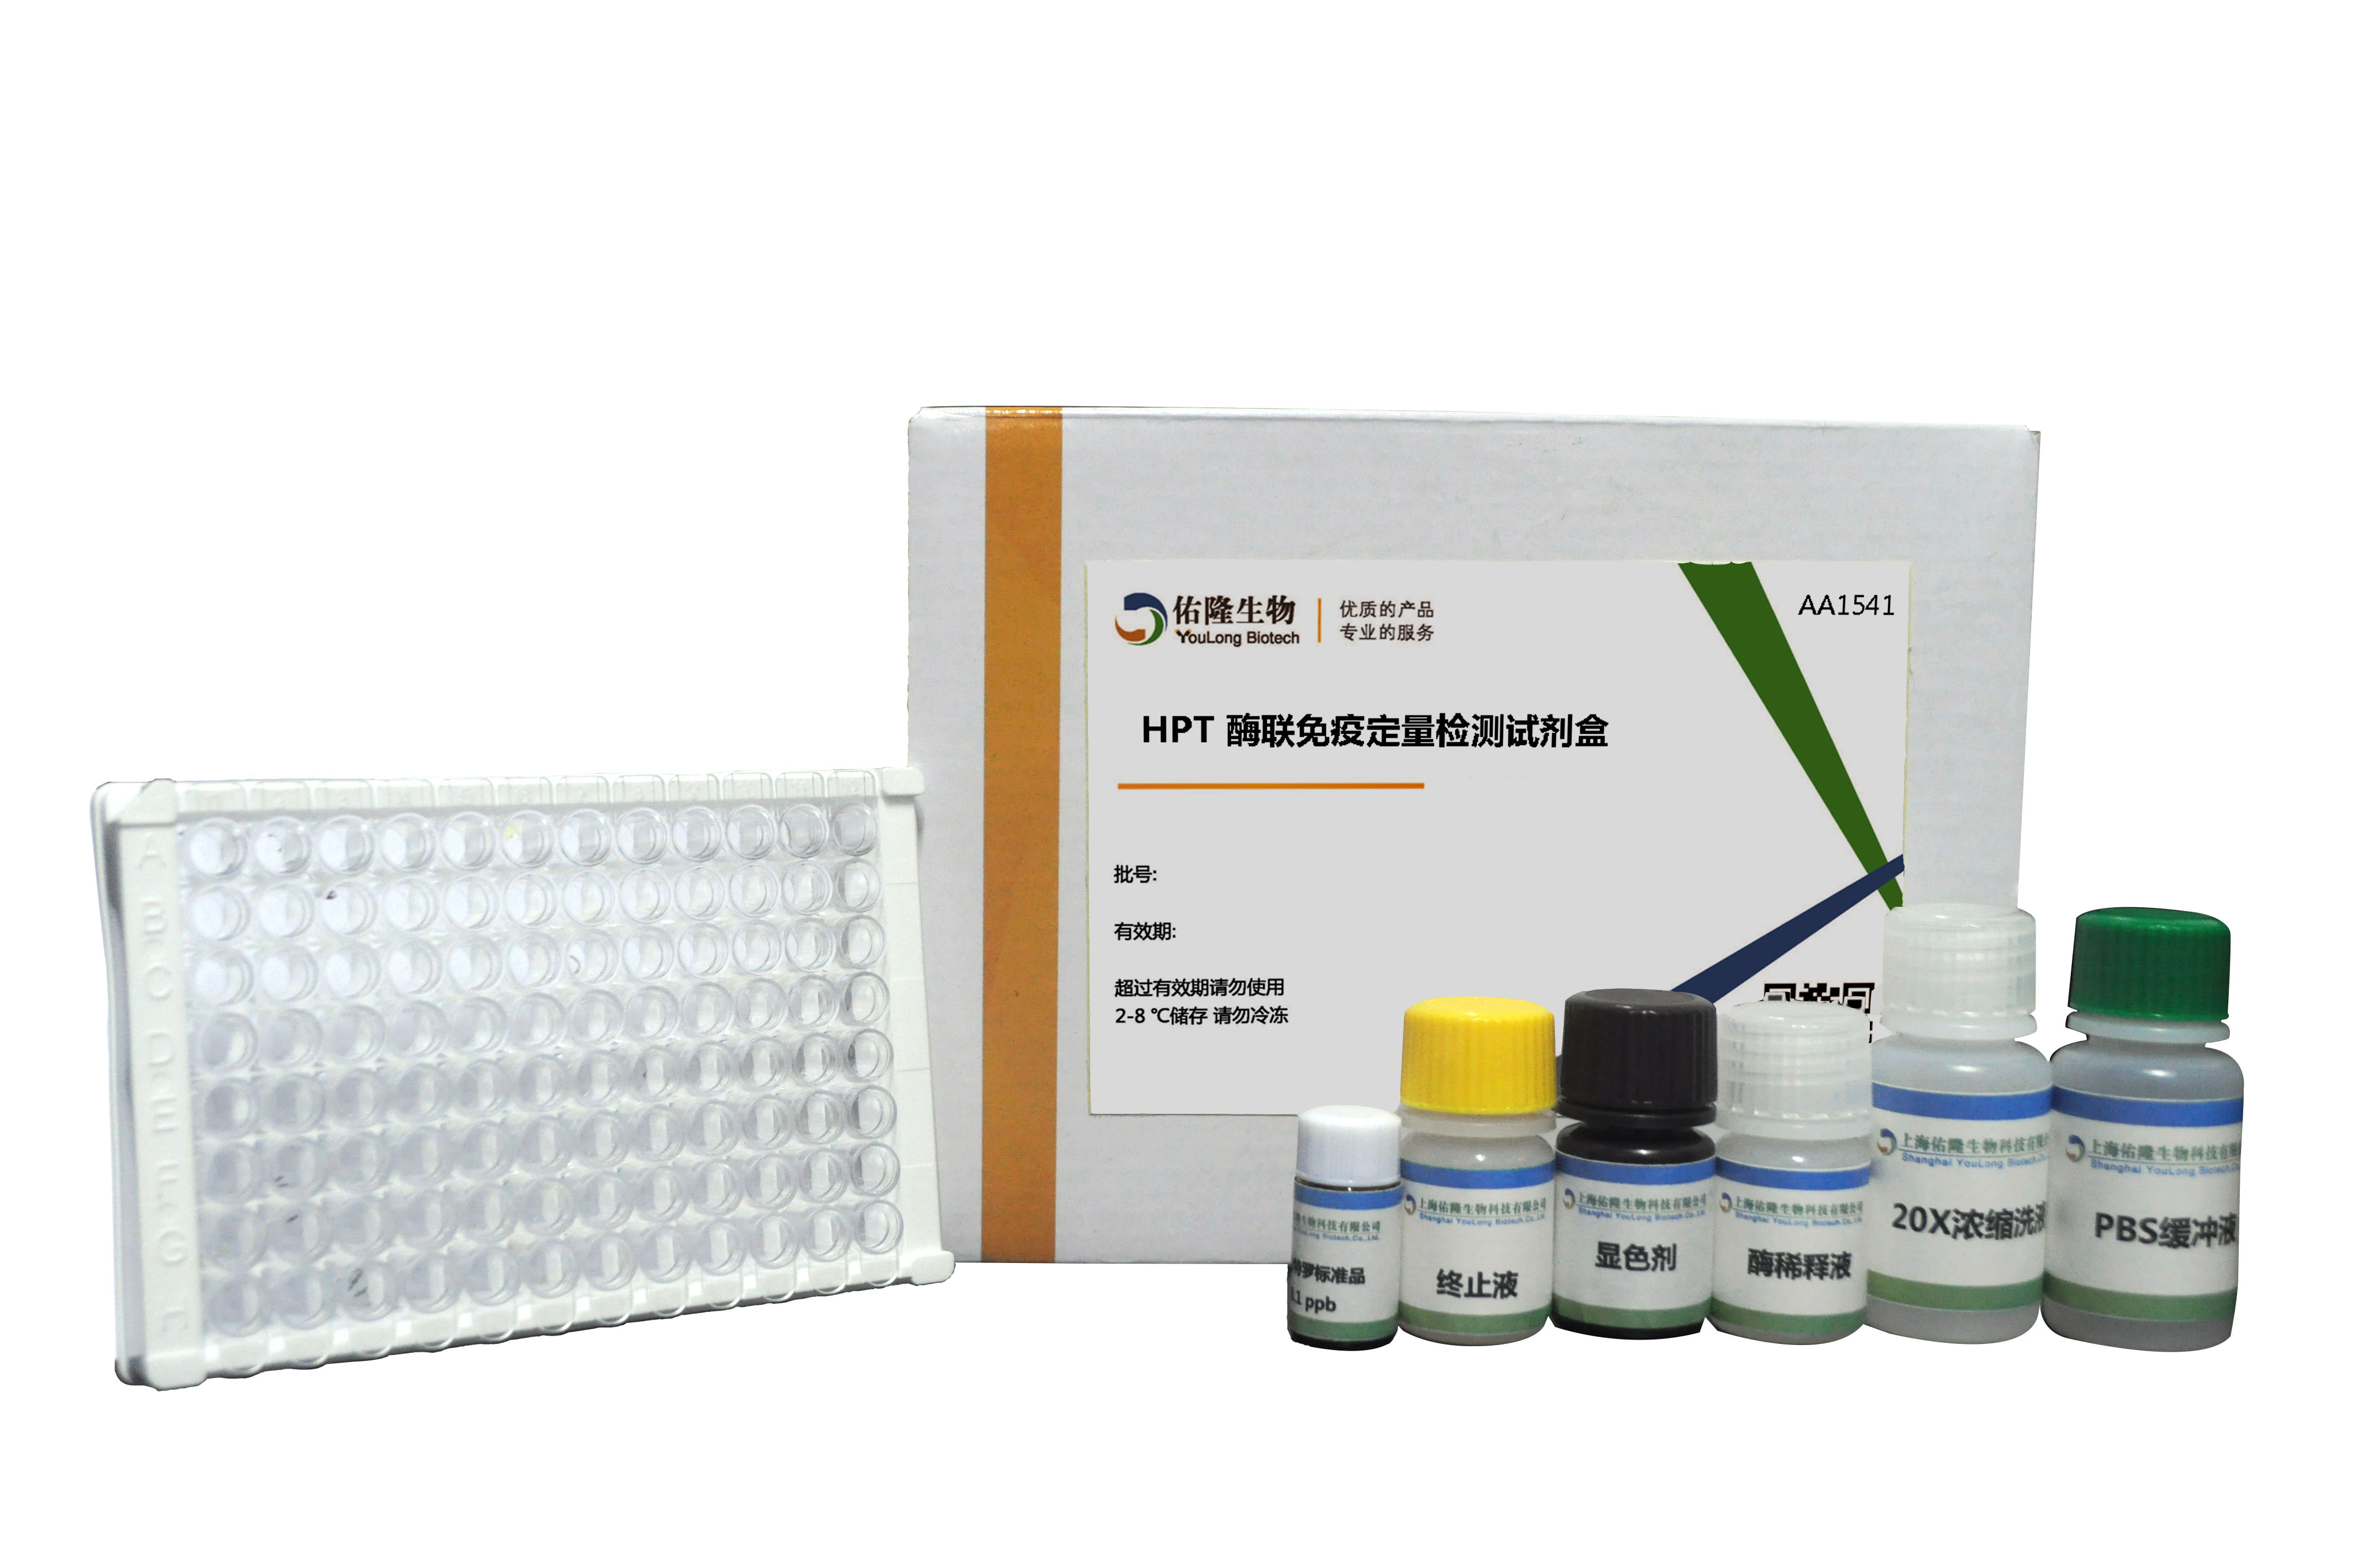 HPT酶联免疫定量检测试剂盒